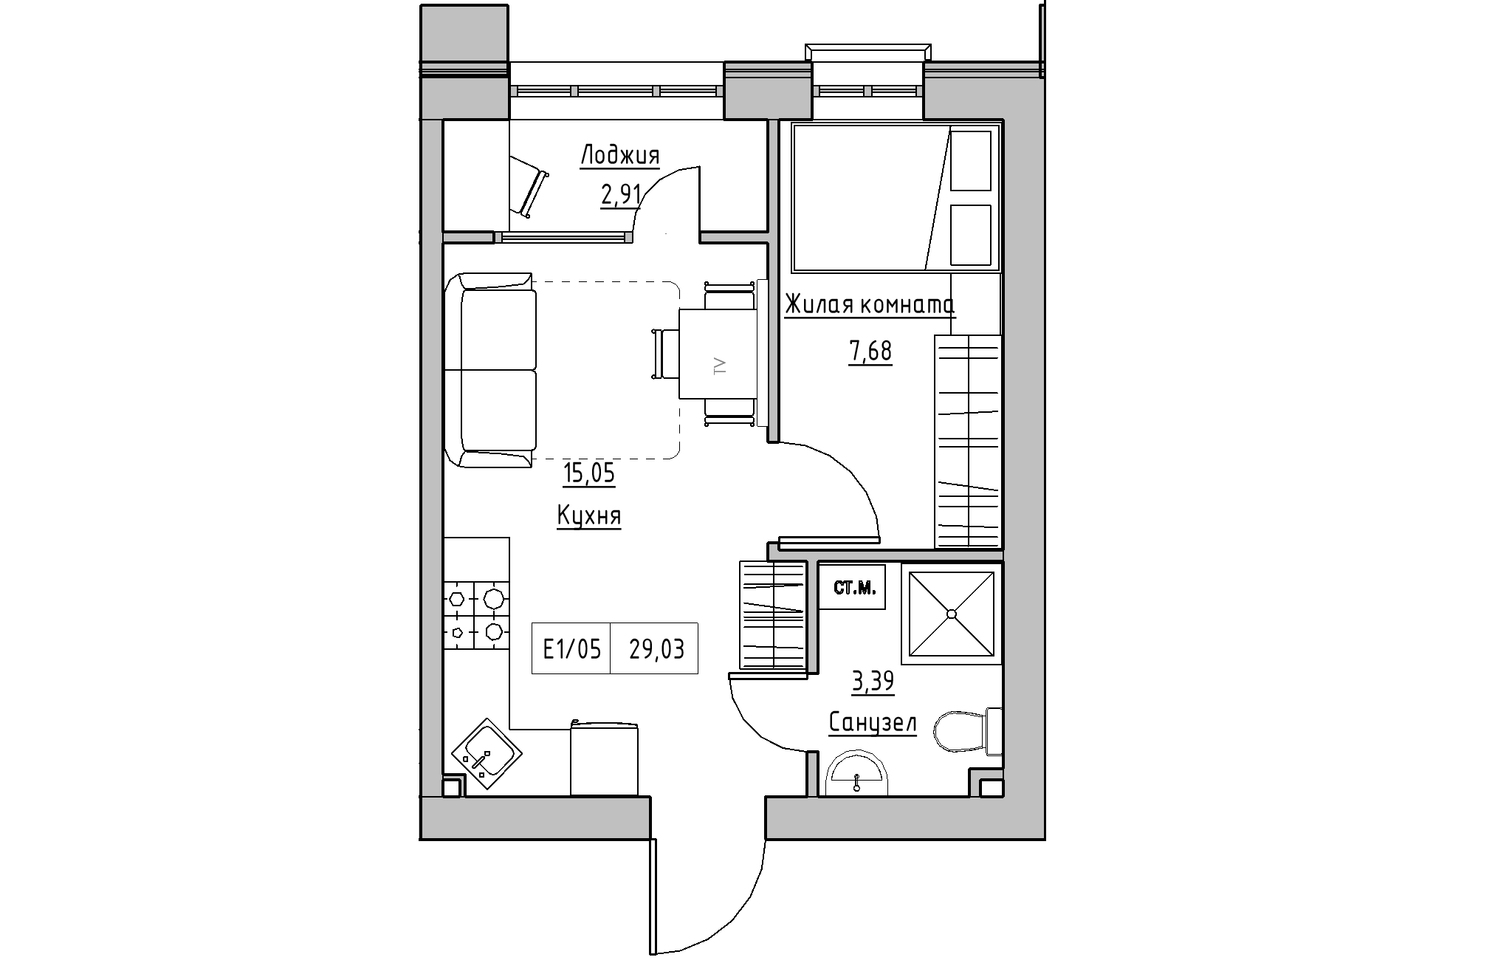 Планування 1-к квартира площею 29.03м2, KS-010-04/0007.